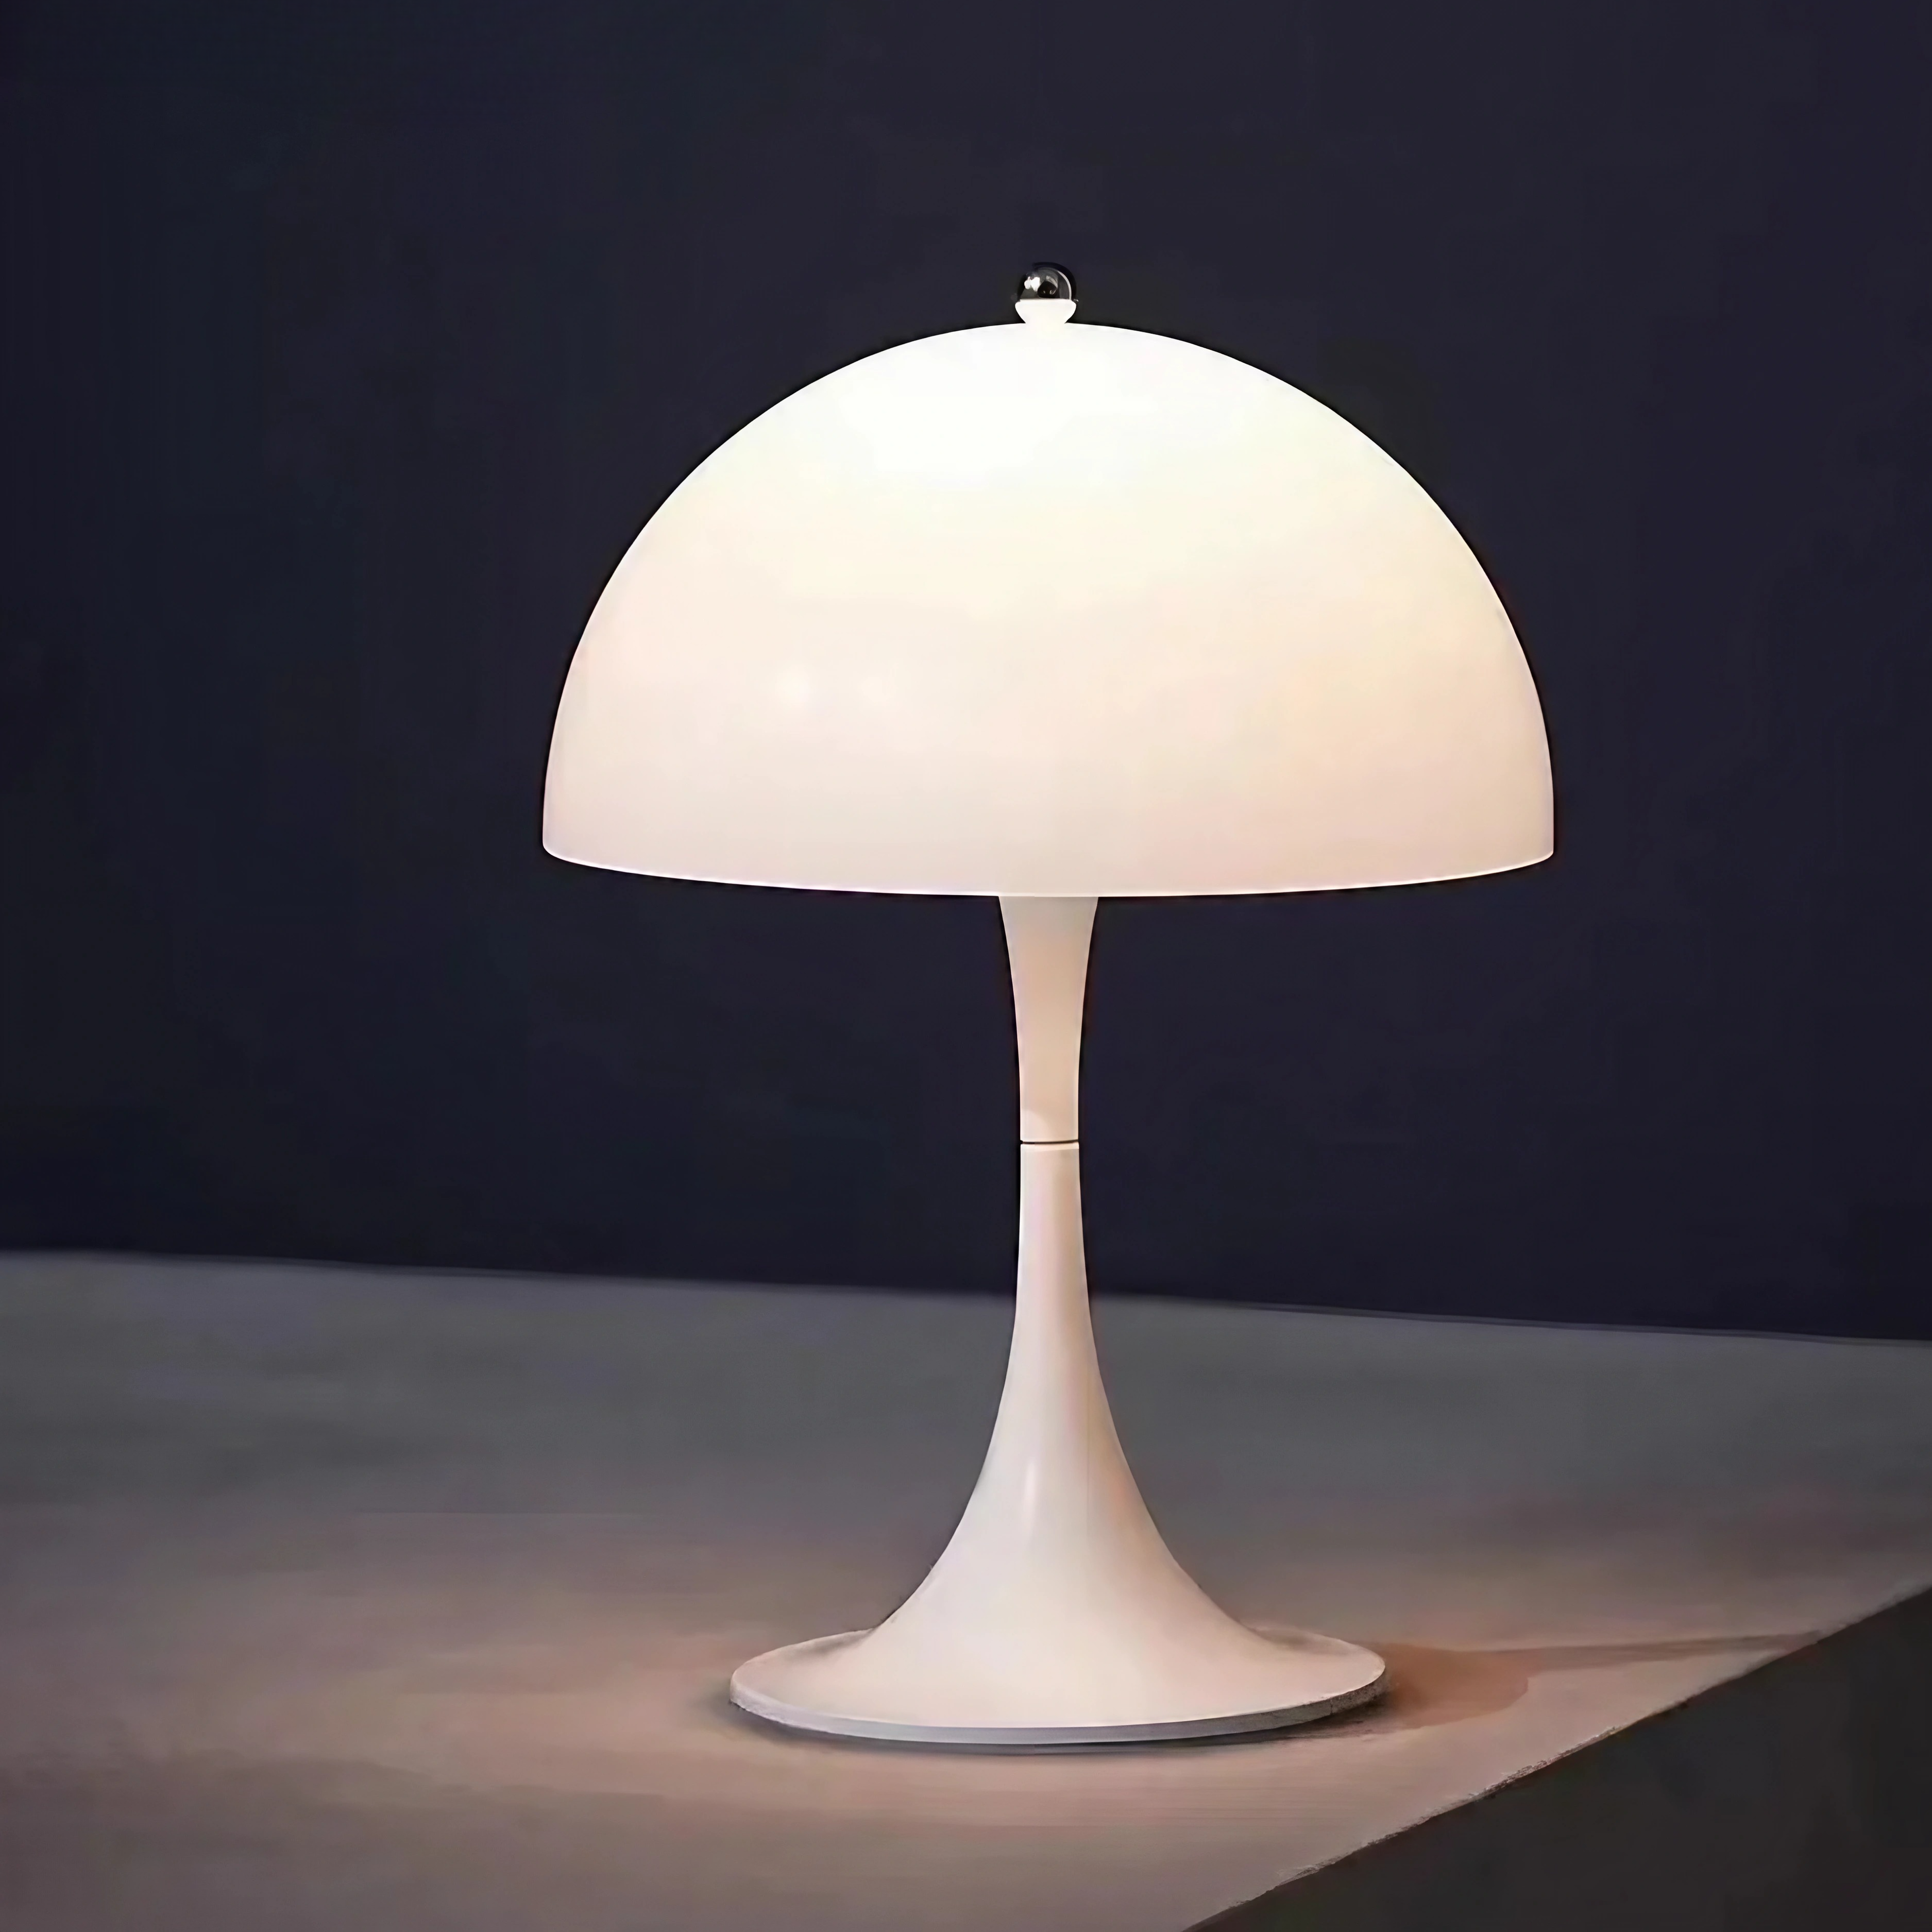 fontein Leraren dag Protestant Modern Mushroom Lamp for Living Room | The Lamp Deck